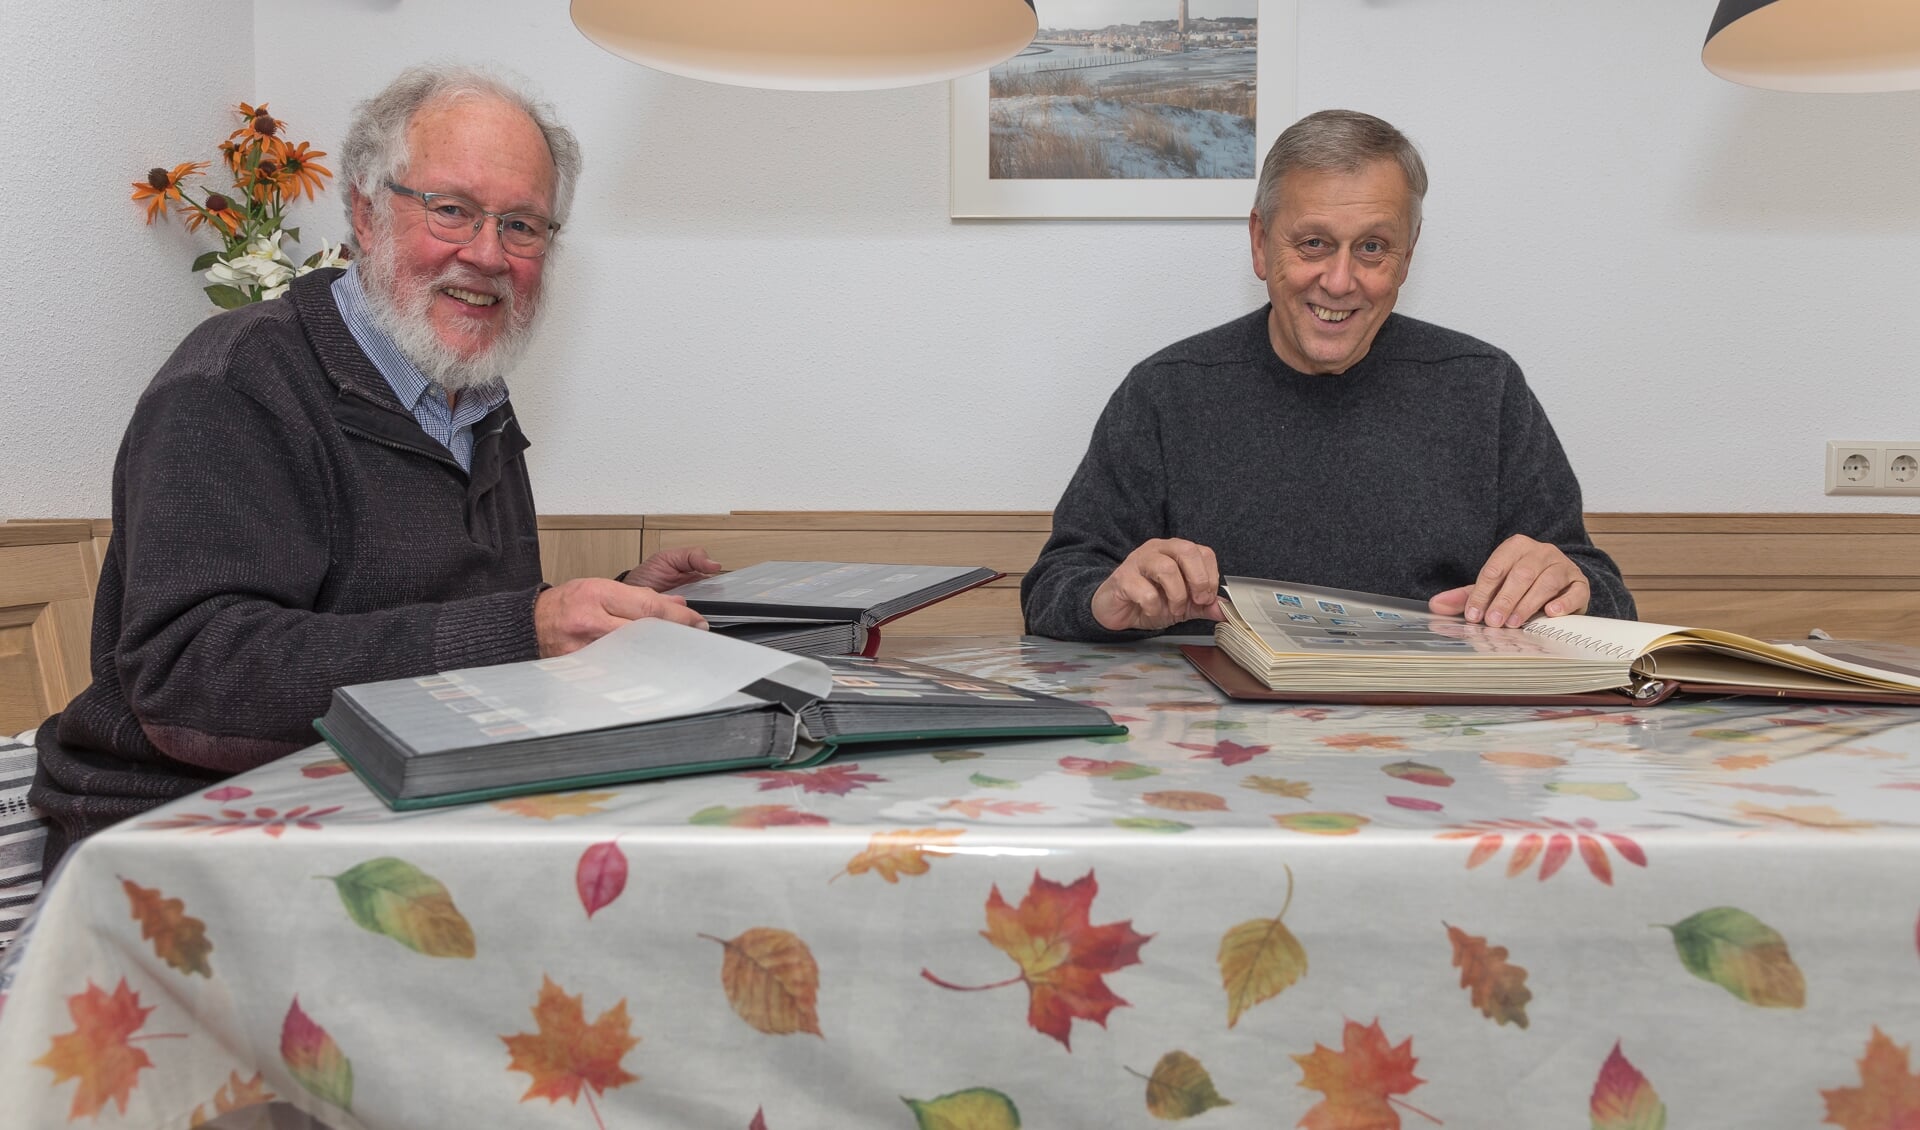 Peter Kool en Jan van den Brink kunnen uren praten over hun grote hobby: postzegels verzamelen.